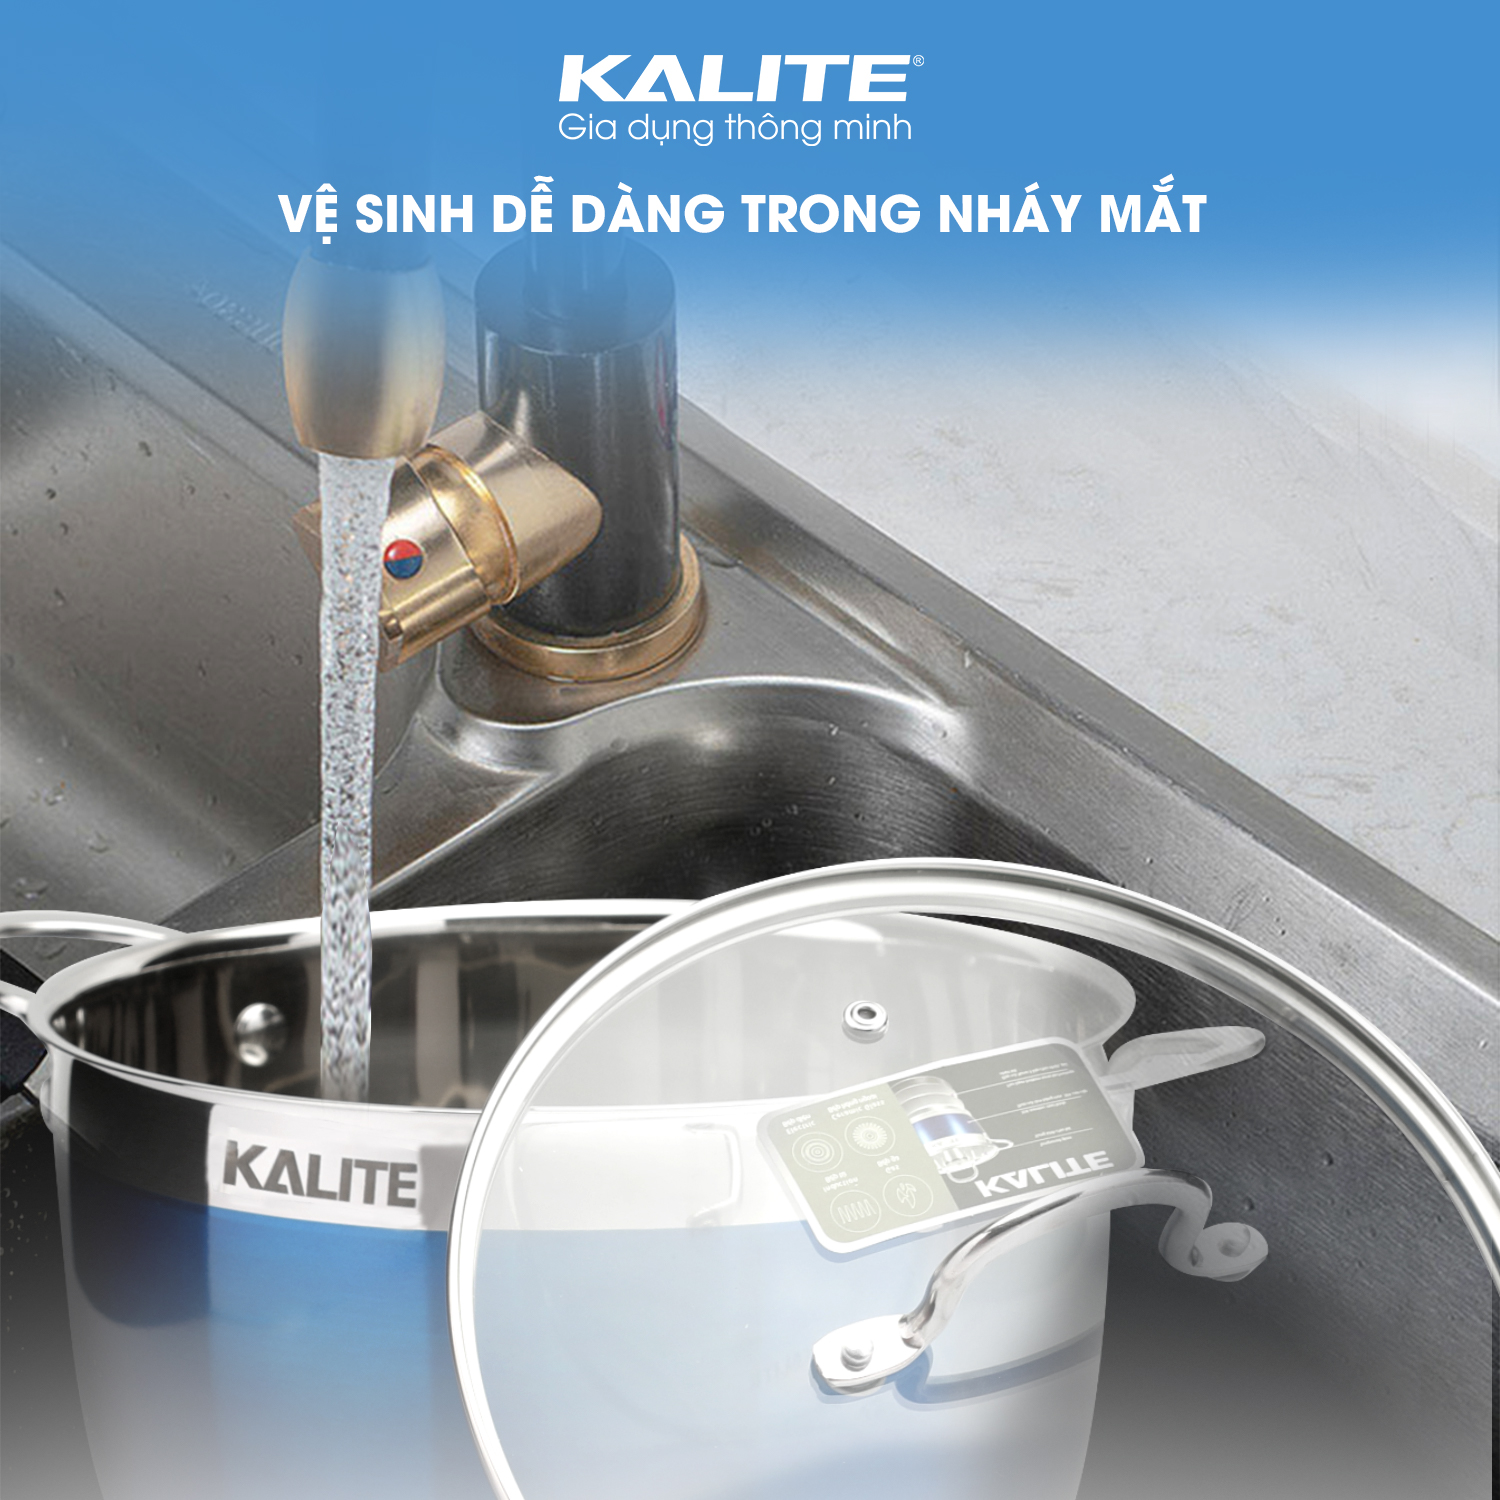 Bộ nồi chảo inox 5 đáy nắp kính Kalite KL-336 - Vệ sinh dễ dàng. Sử dụng thích hợp với máy rửa bát, lò nướng